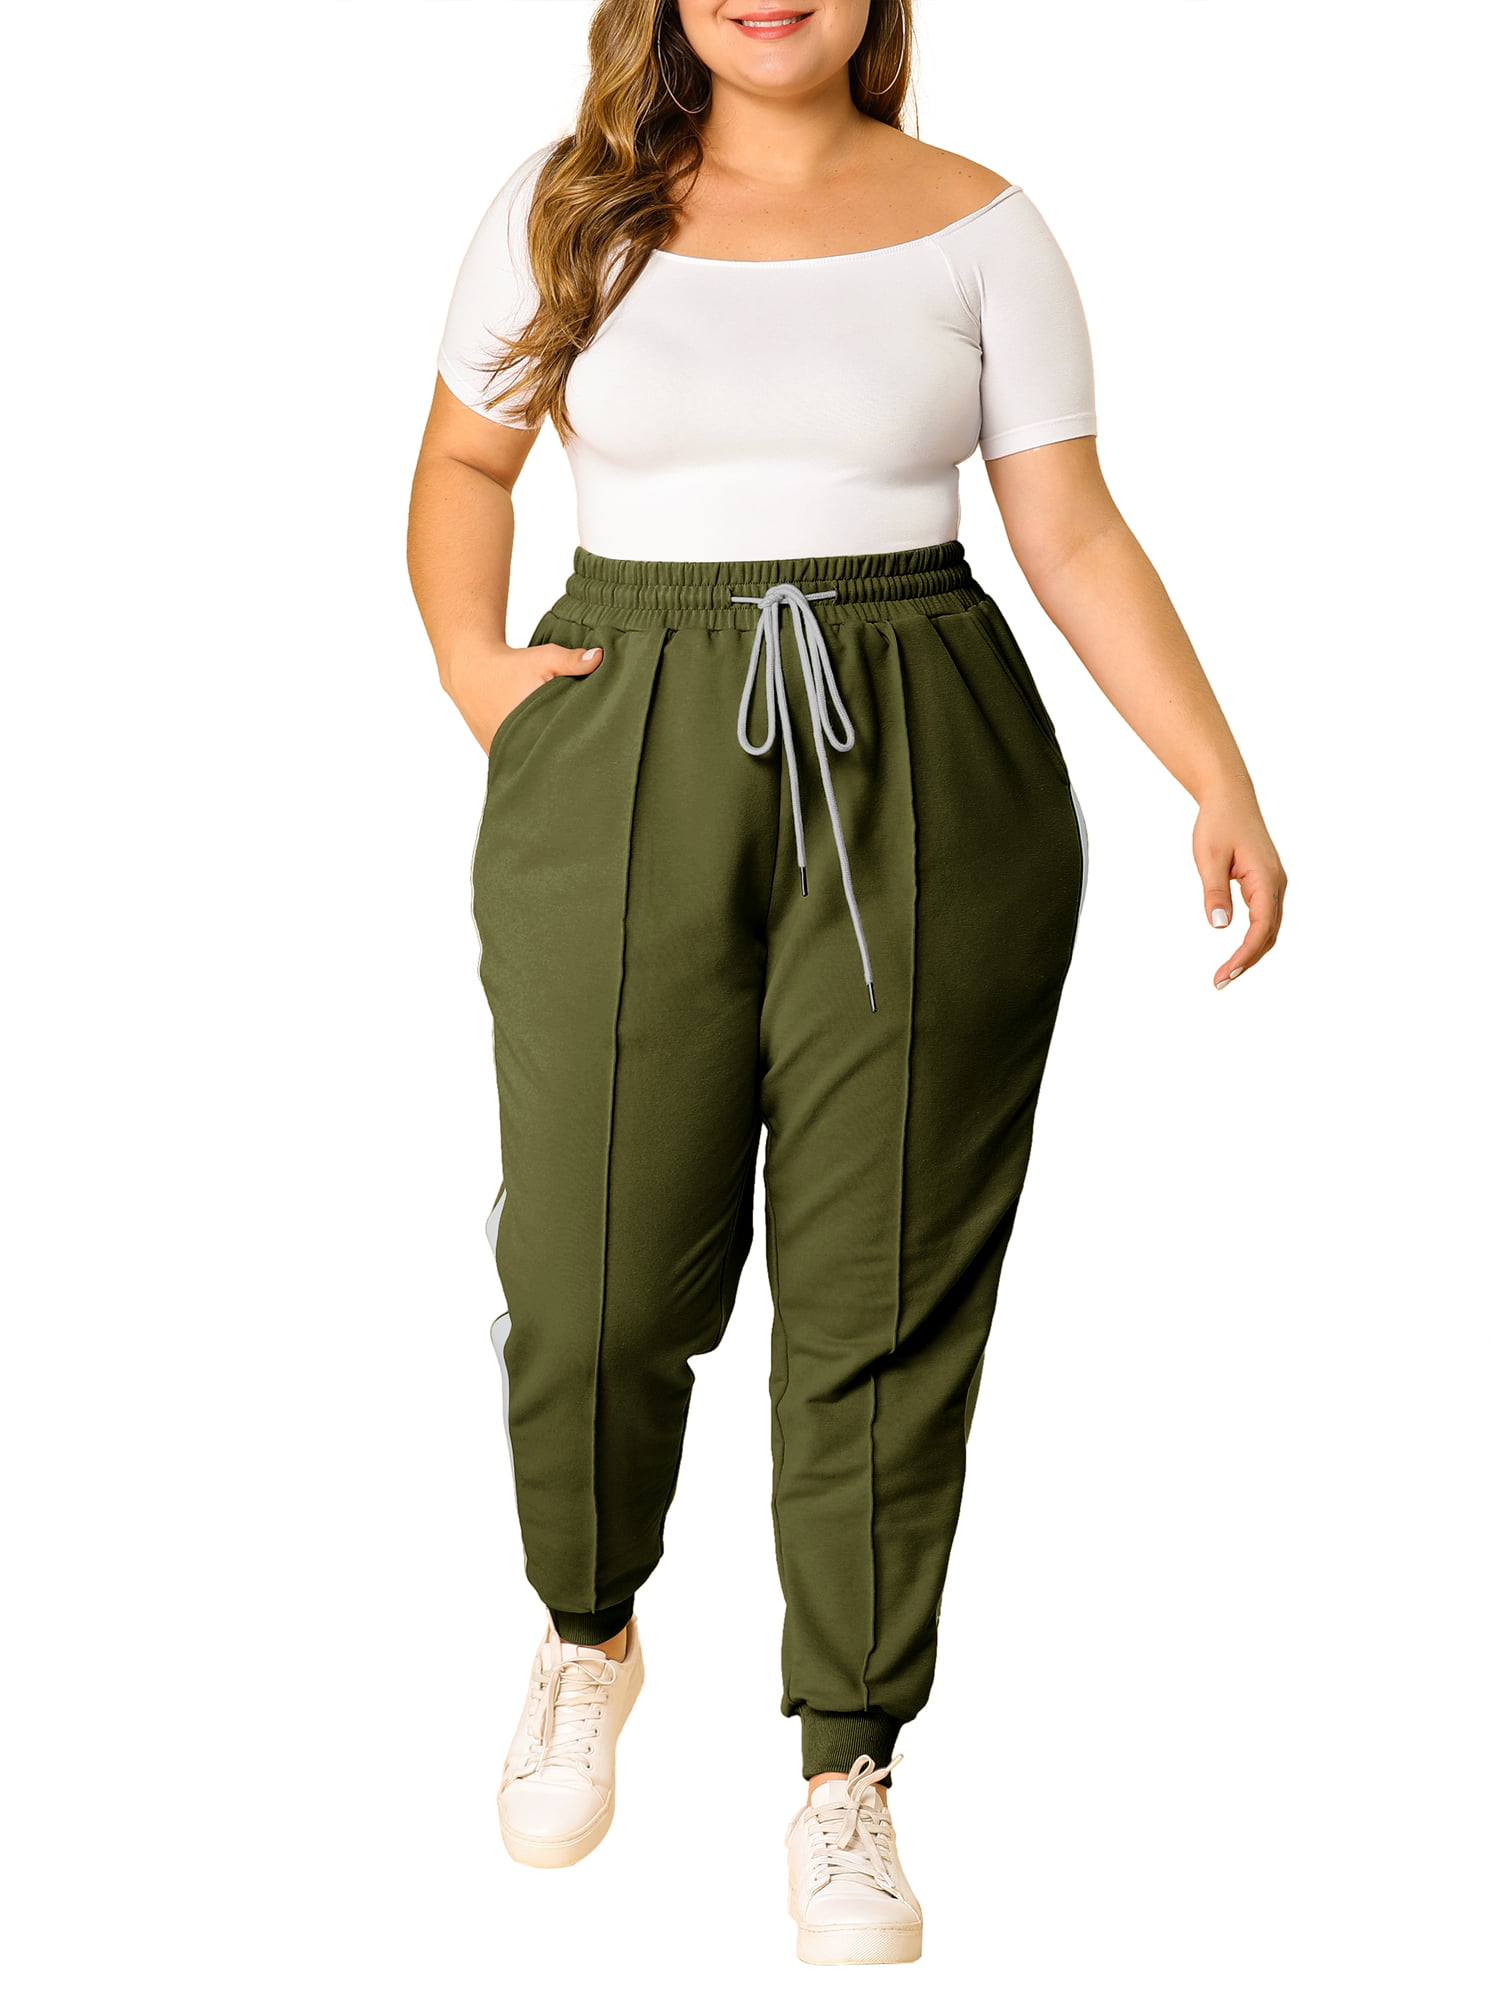 Unique Bargains Women's Plus Size Sweatpants Elastic Waist Joggers Pants -  Walmart.com